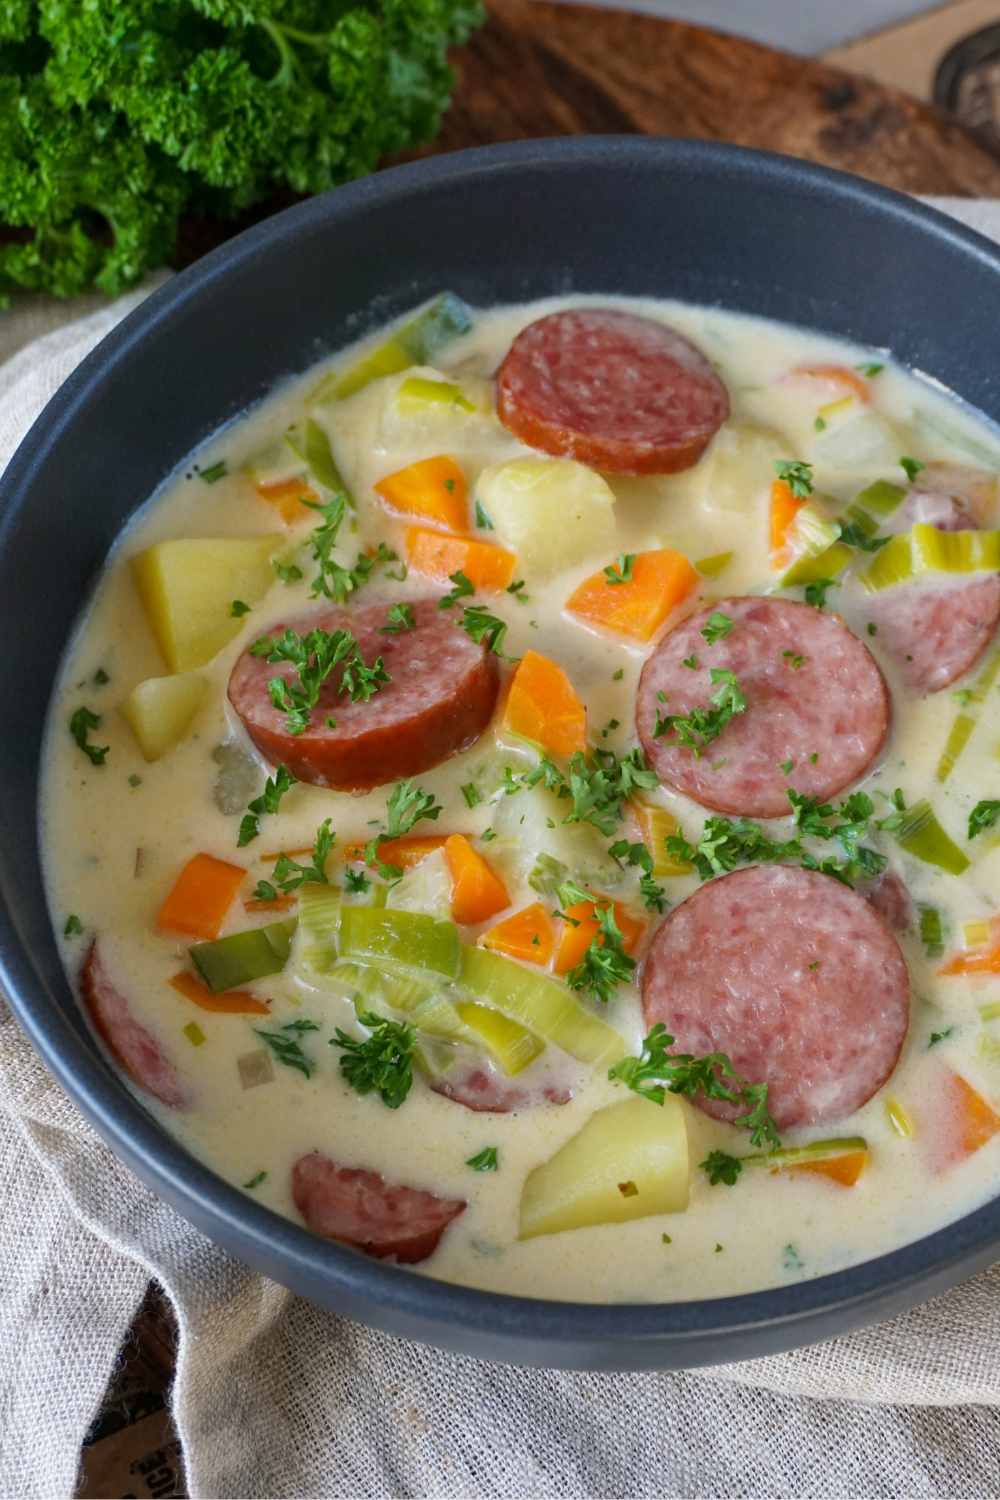 Cabanossi-Suppe mit Kartoffel